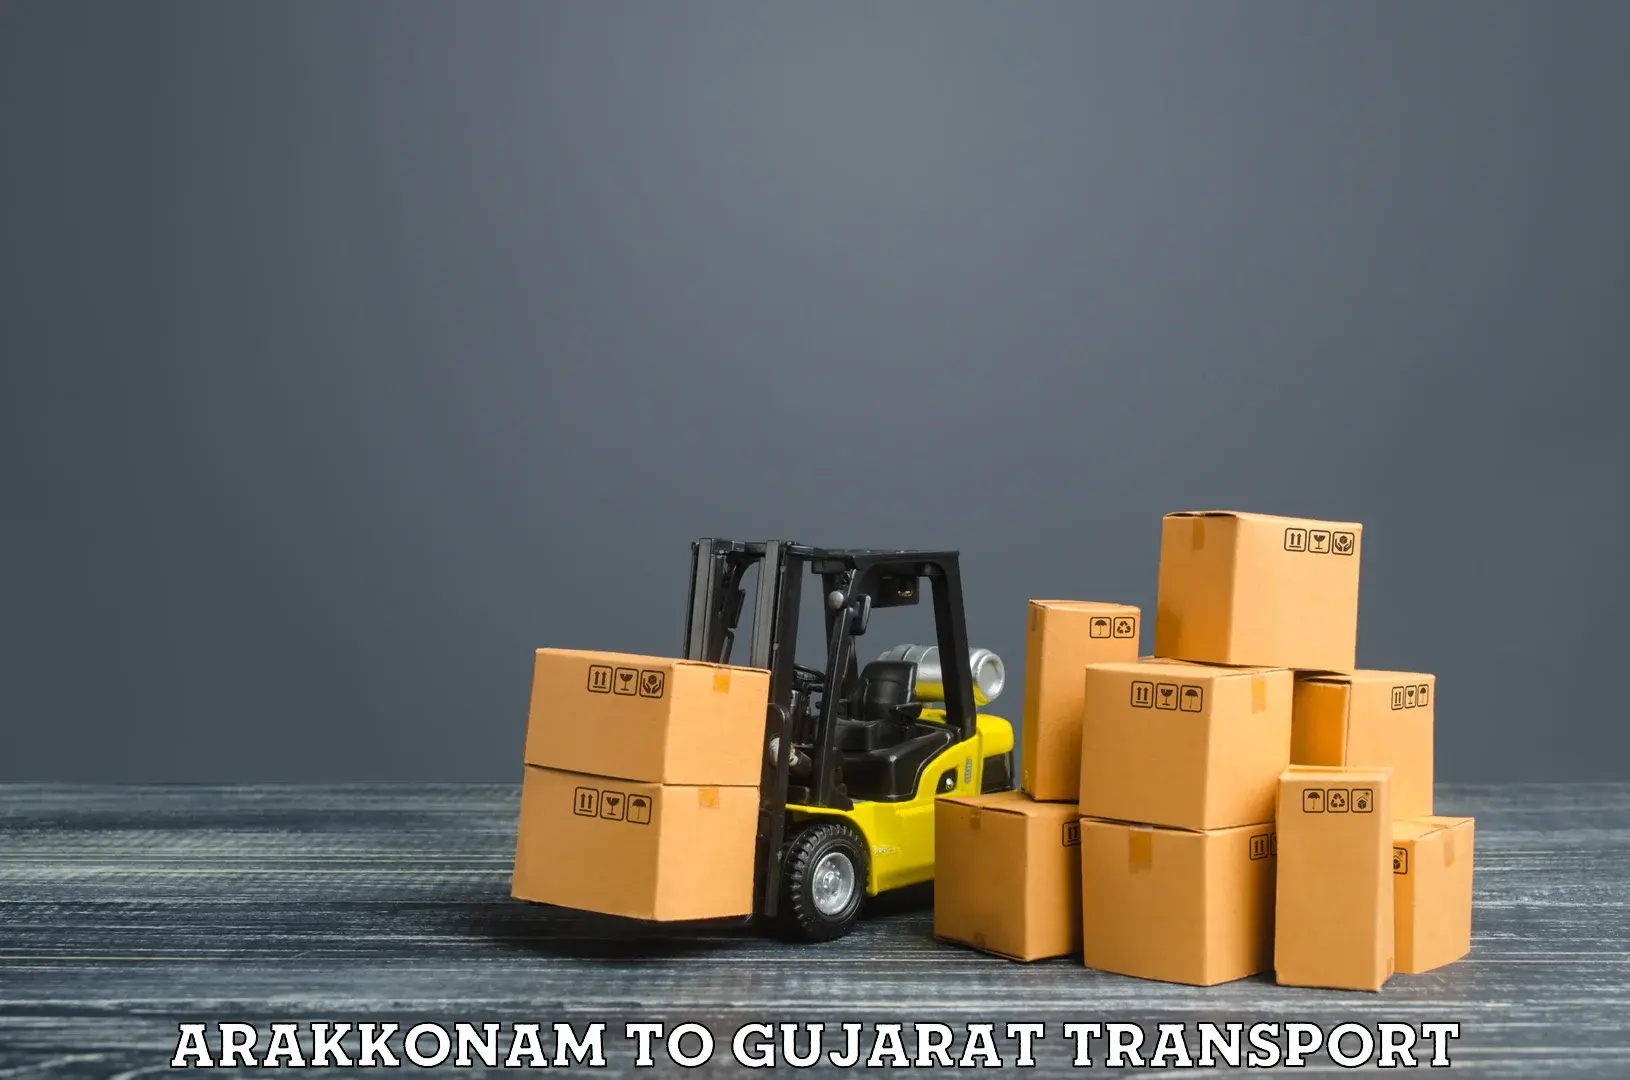 Transport in sharing Arakkonam to Patan Gujarat